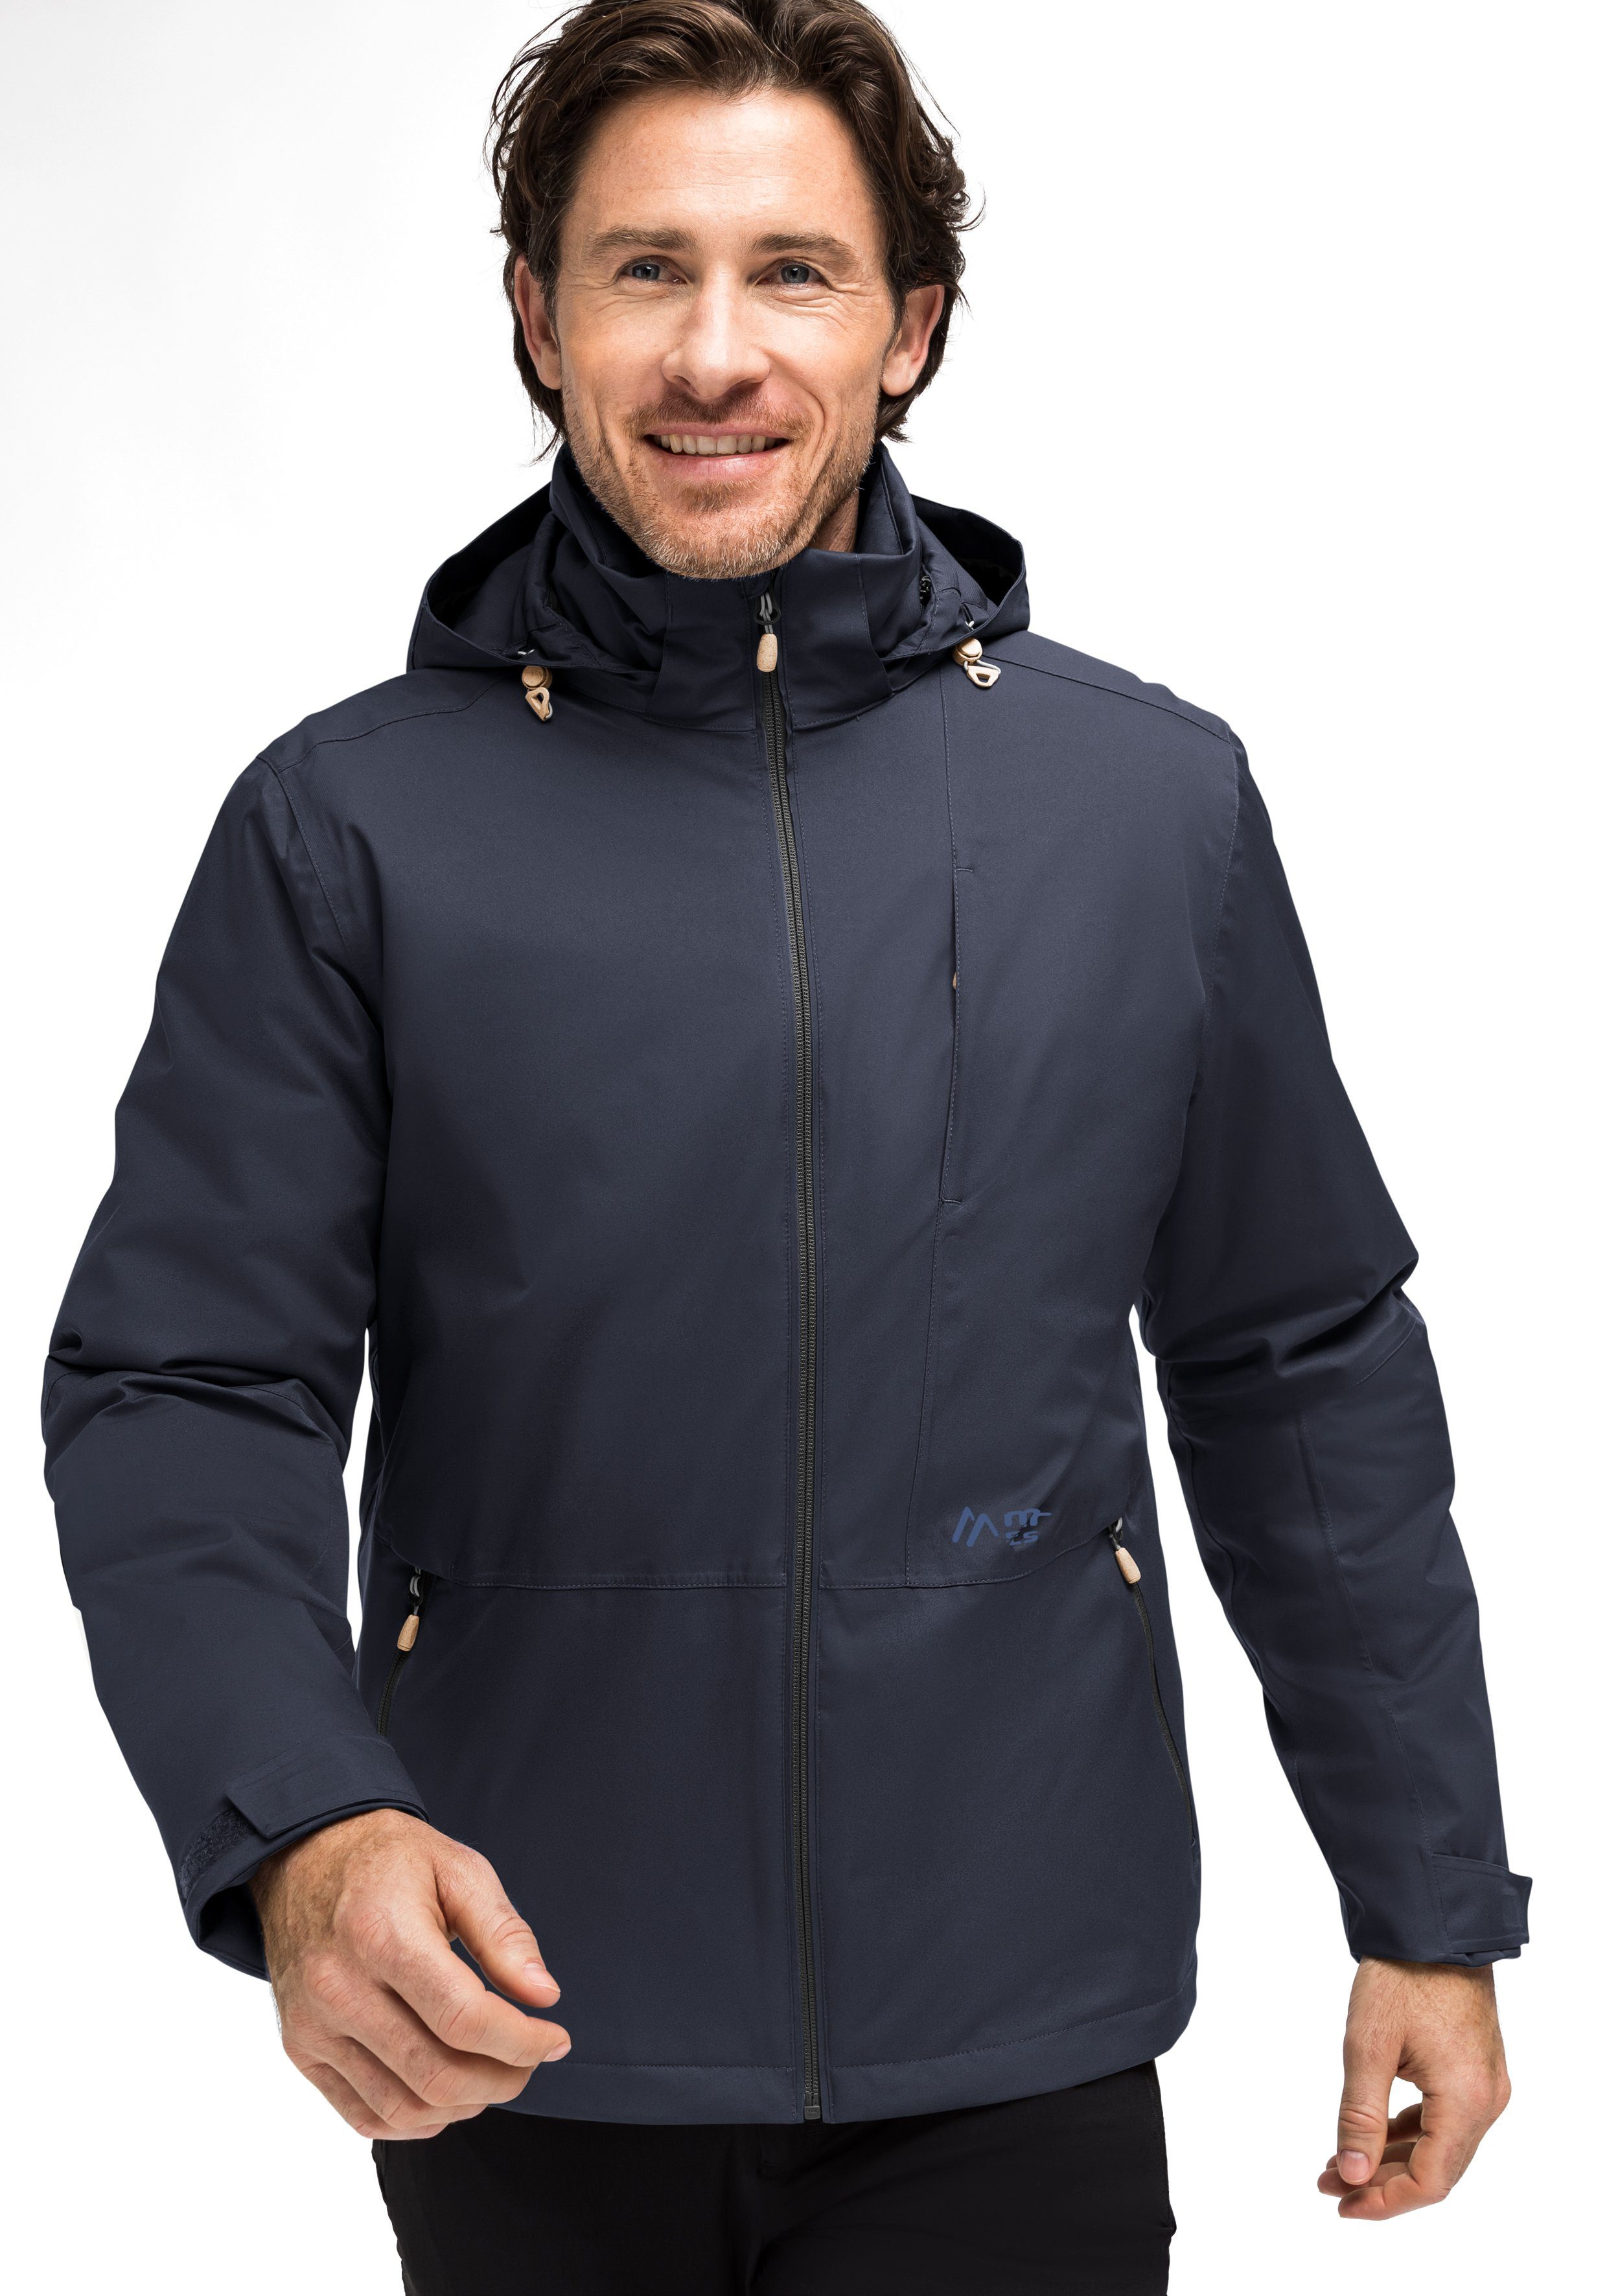 Pro Nachhaltig hergestellte Funktionsjacke M Sports Therm Maier dunkelblau Clima Outdoorjacke